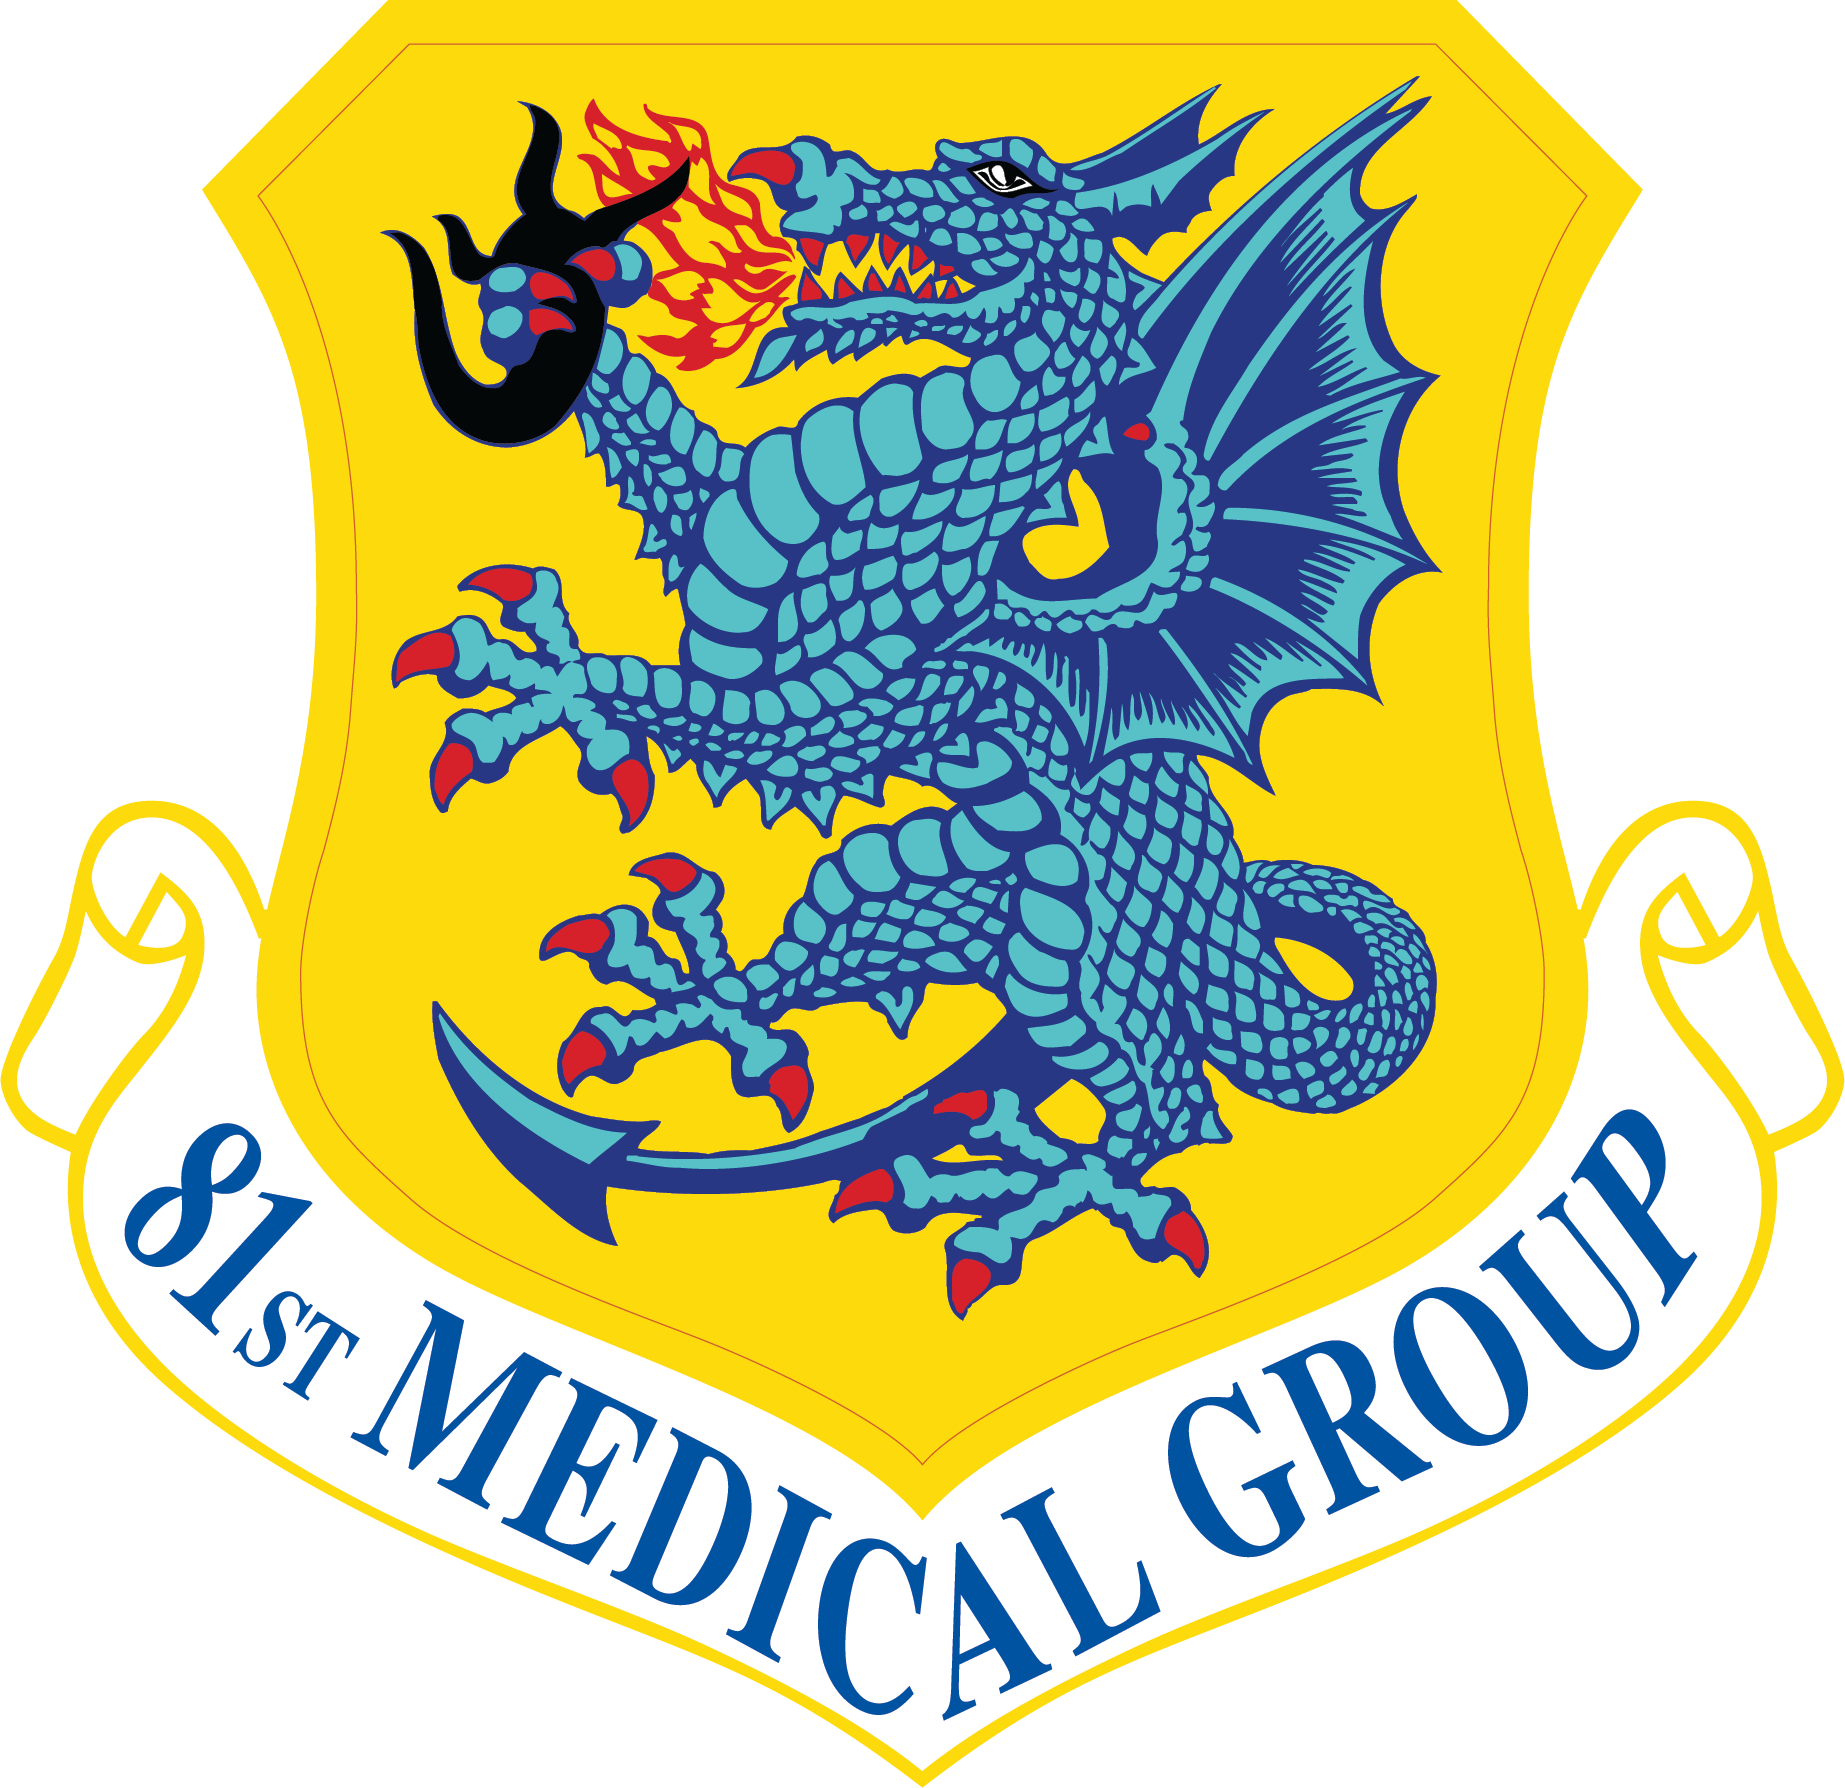 81st MDG Shield